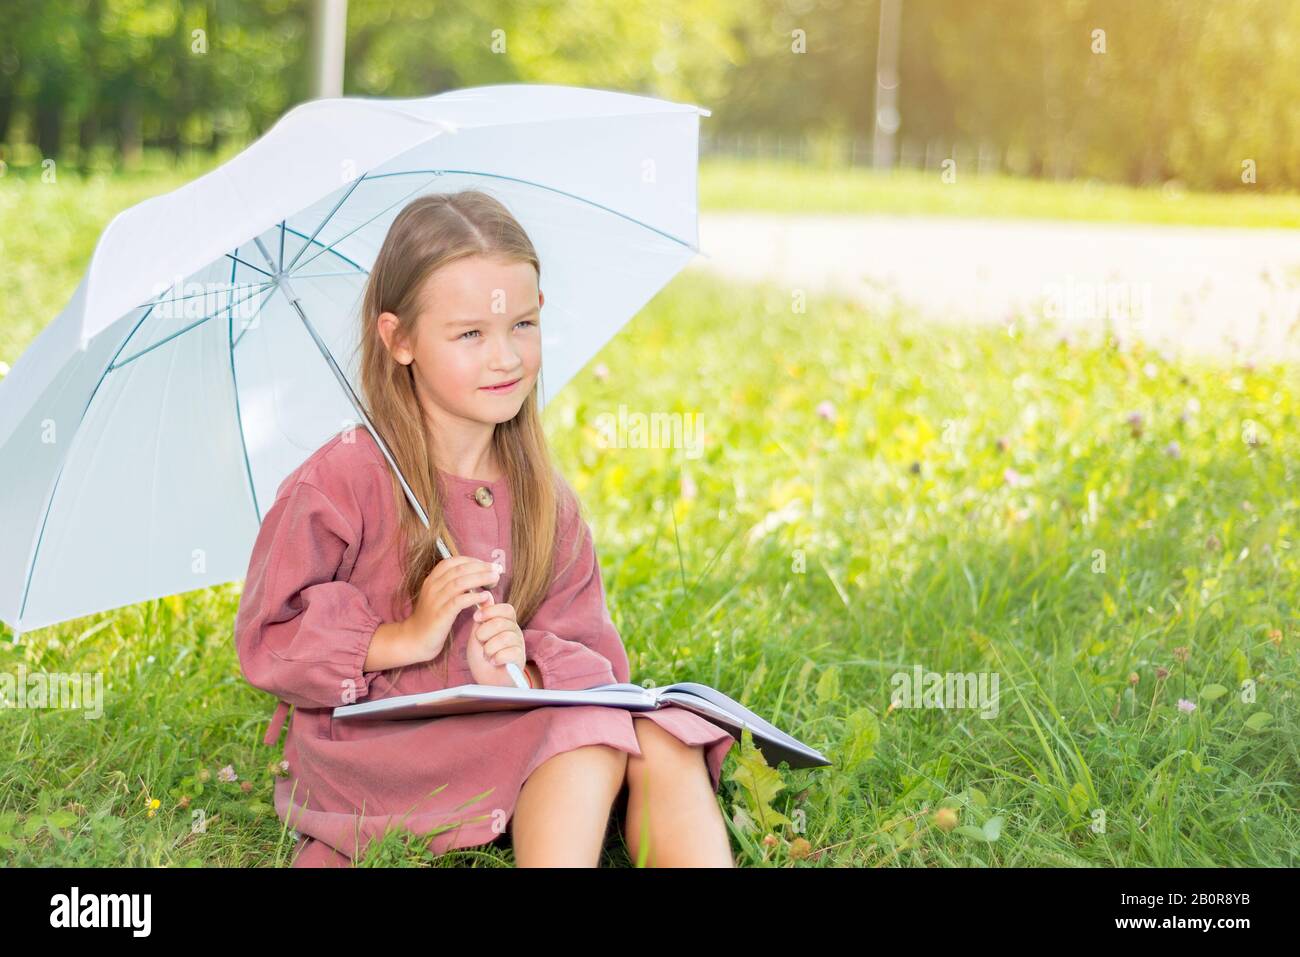 bambino che legge un libro. bambina sotto un ombrello si siede su erba verde in una luminosa giornata di sole Foto Stock